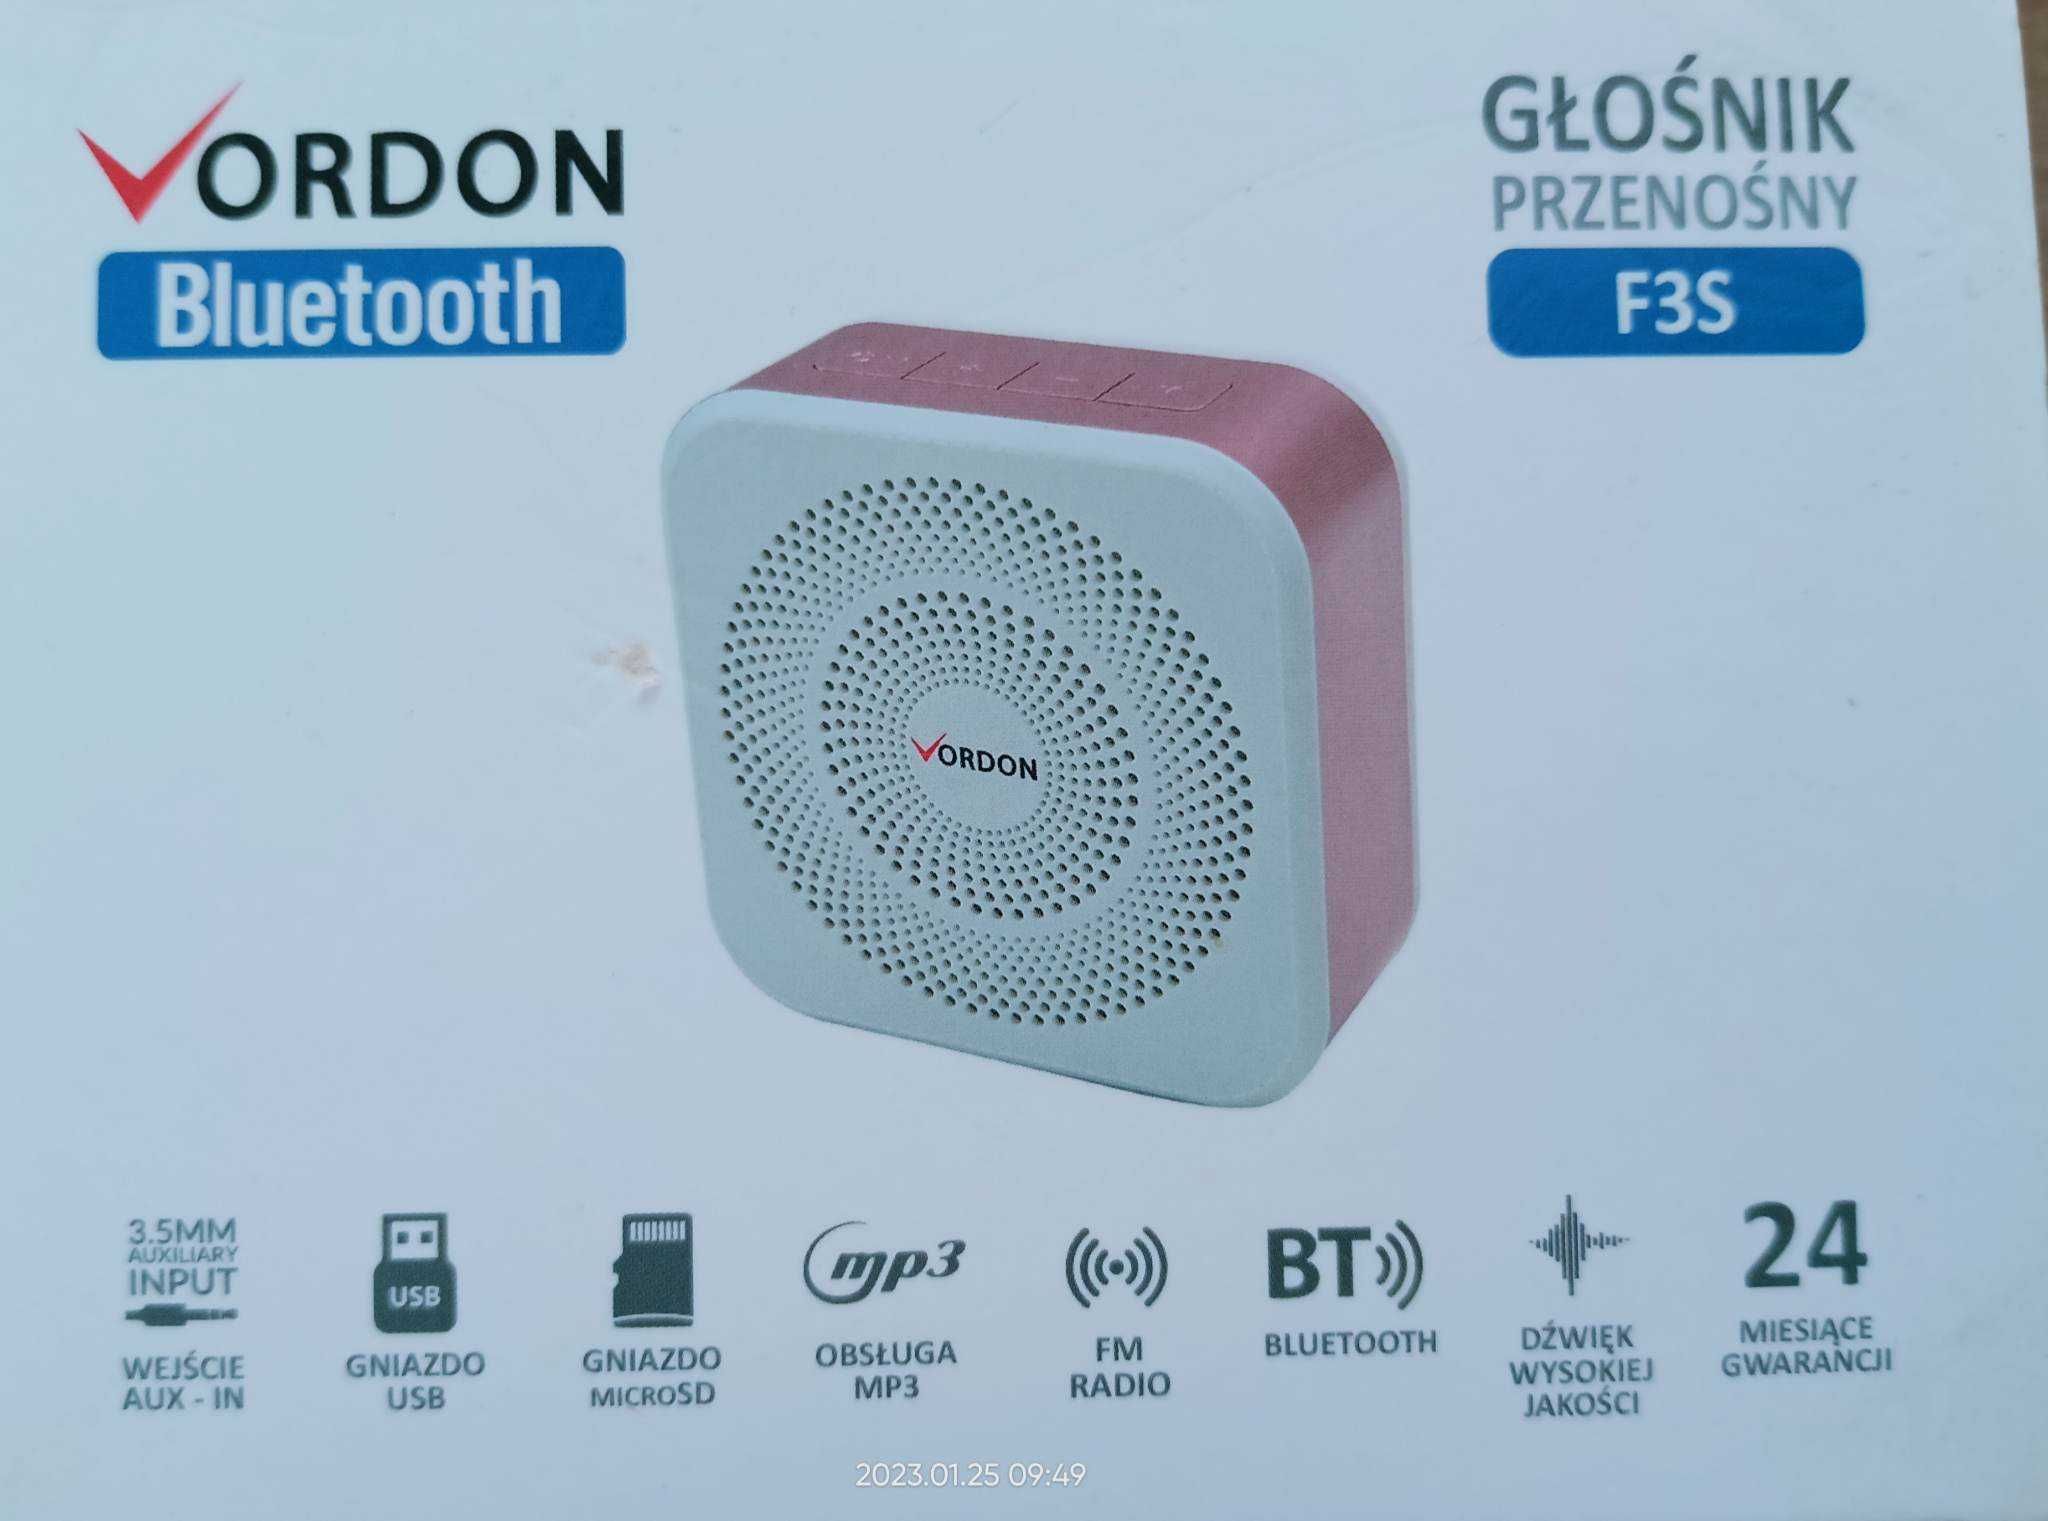 Głosnik Bluetoothj z Funkcja radia